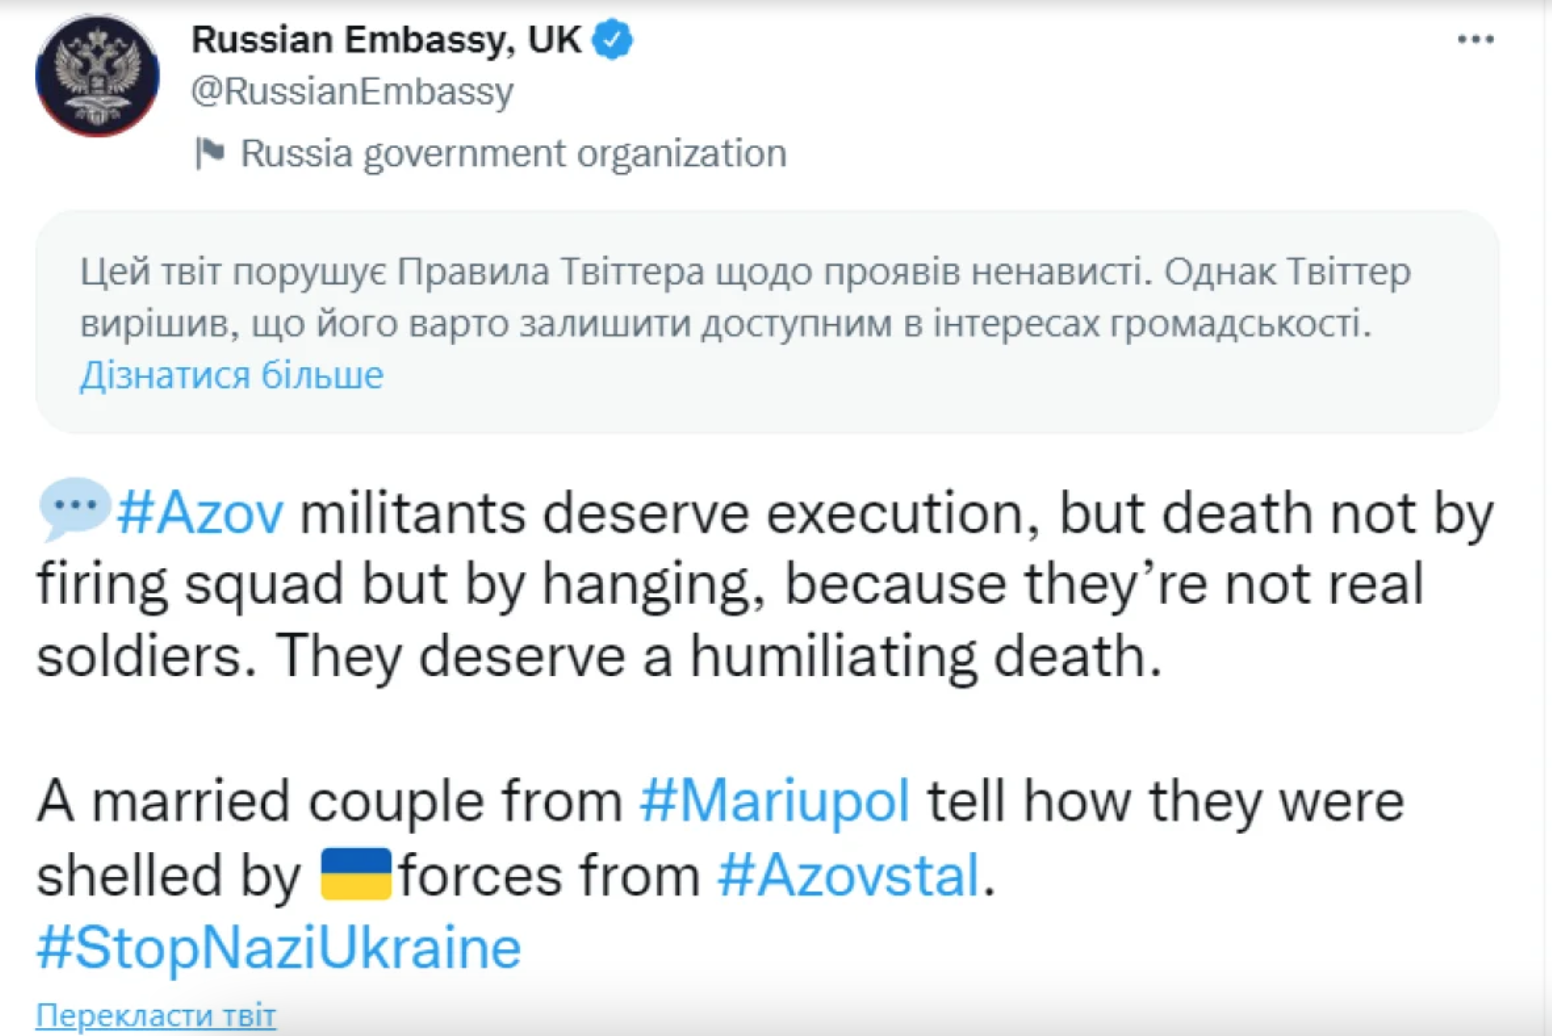 Дипломатия "высшего уровня": посольство РФ в Британии заявило, что пленные "азовцы" заслуживают казни из-за повешения